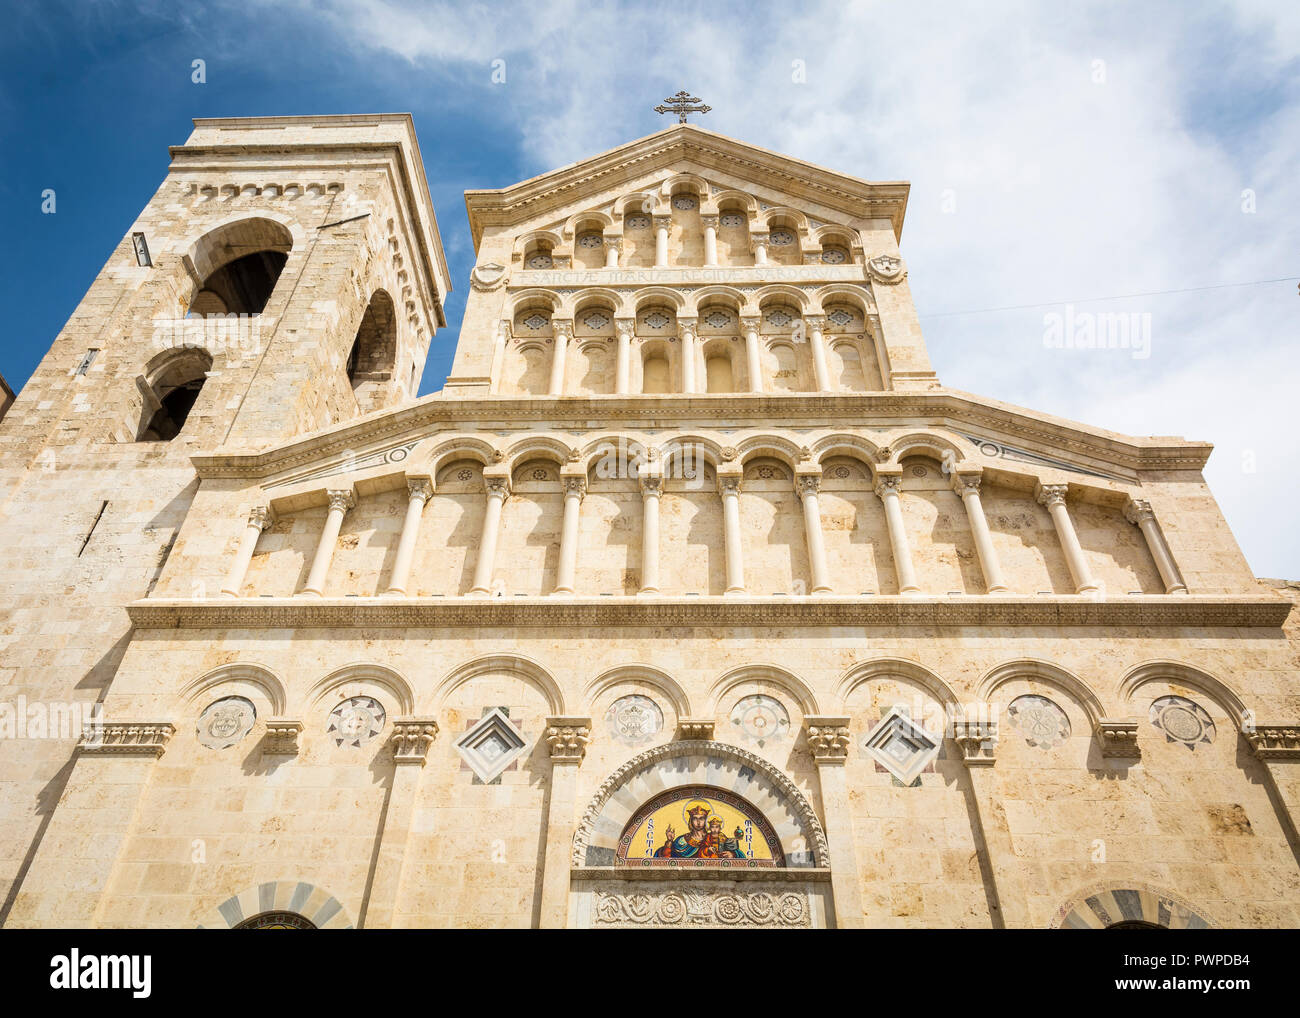 Neo-gotischen Fassade der Kathedrale von Cagliari Santa Maria. gebaut von Pisani im dreizehnten Jahrhundert, die tiefgreifenden Veränderungen in den Jahrhunder t durchgemacht hat Stockfoto